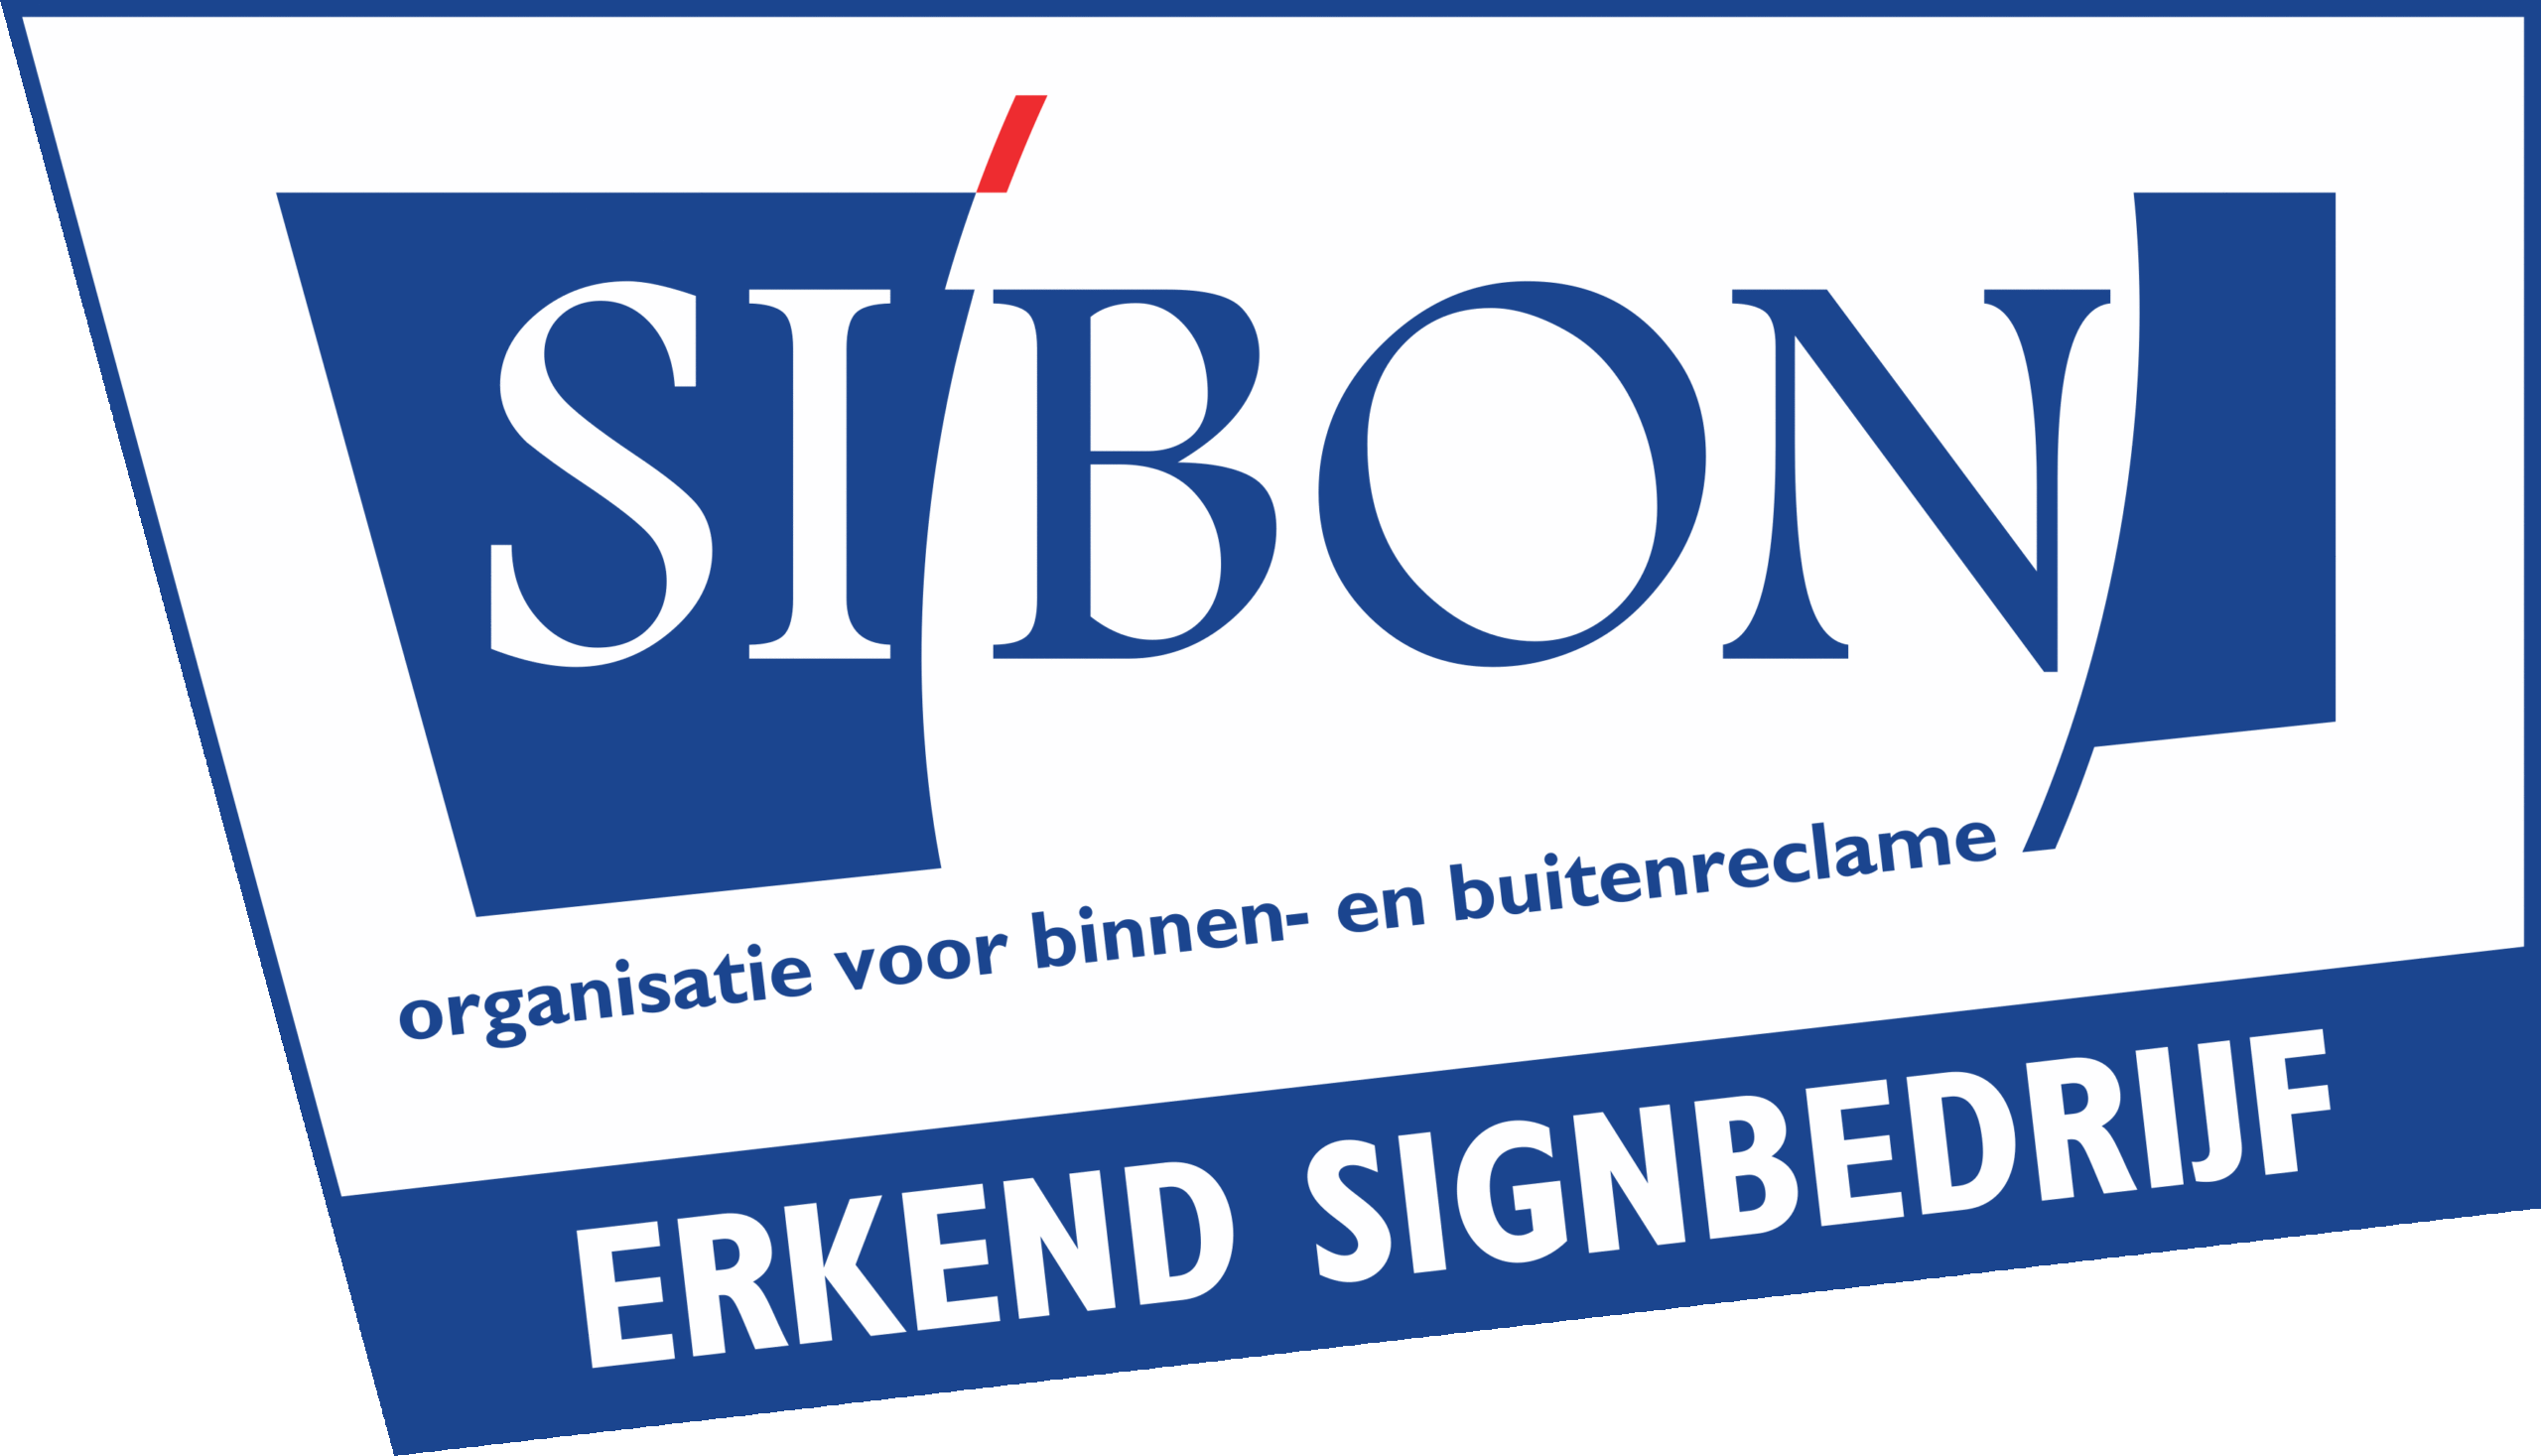 erkend signbedrijf Si\'bon Sibon kwaliteit label